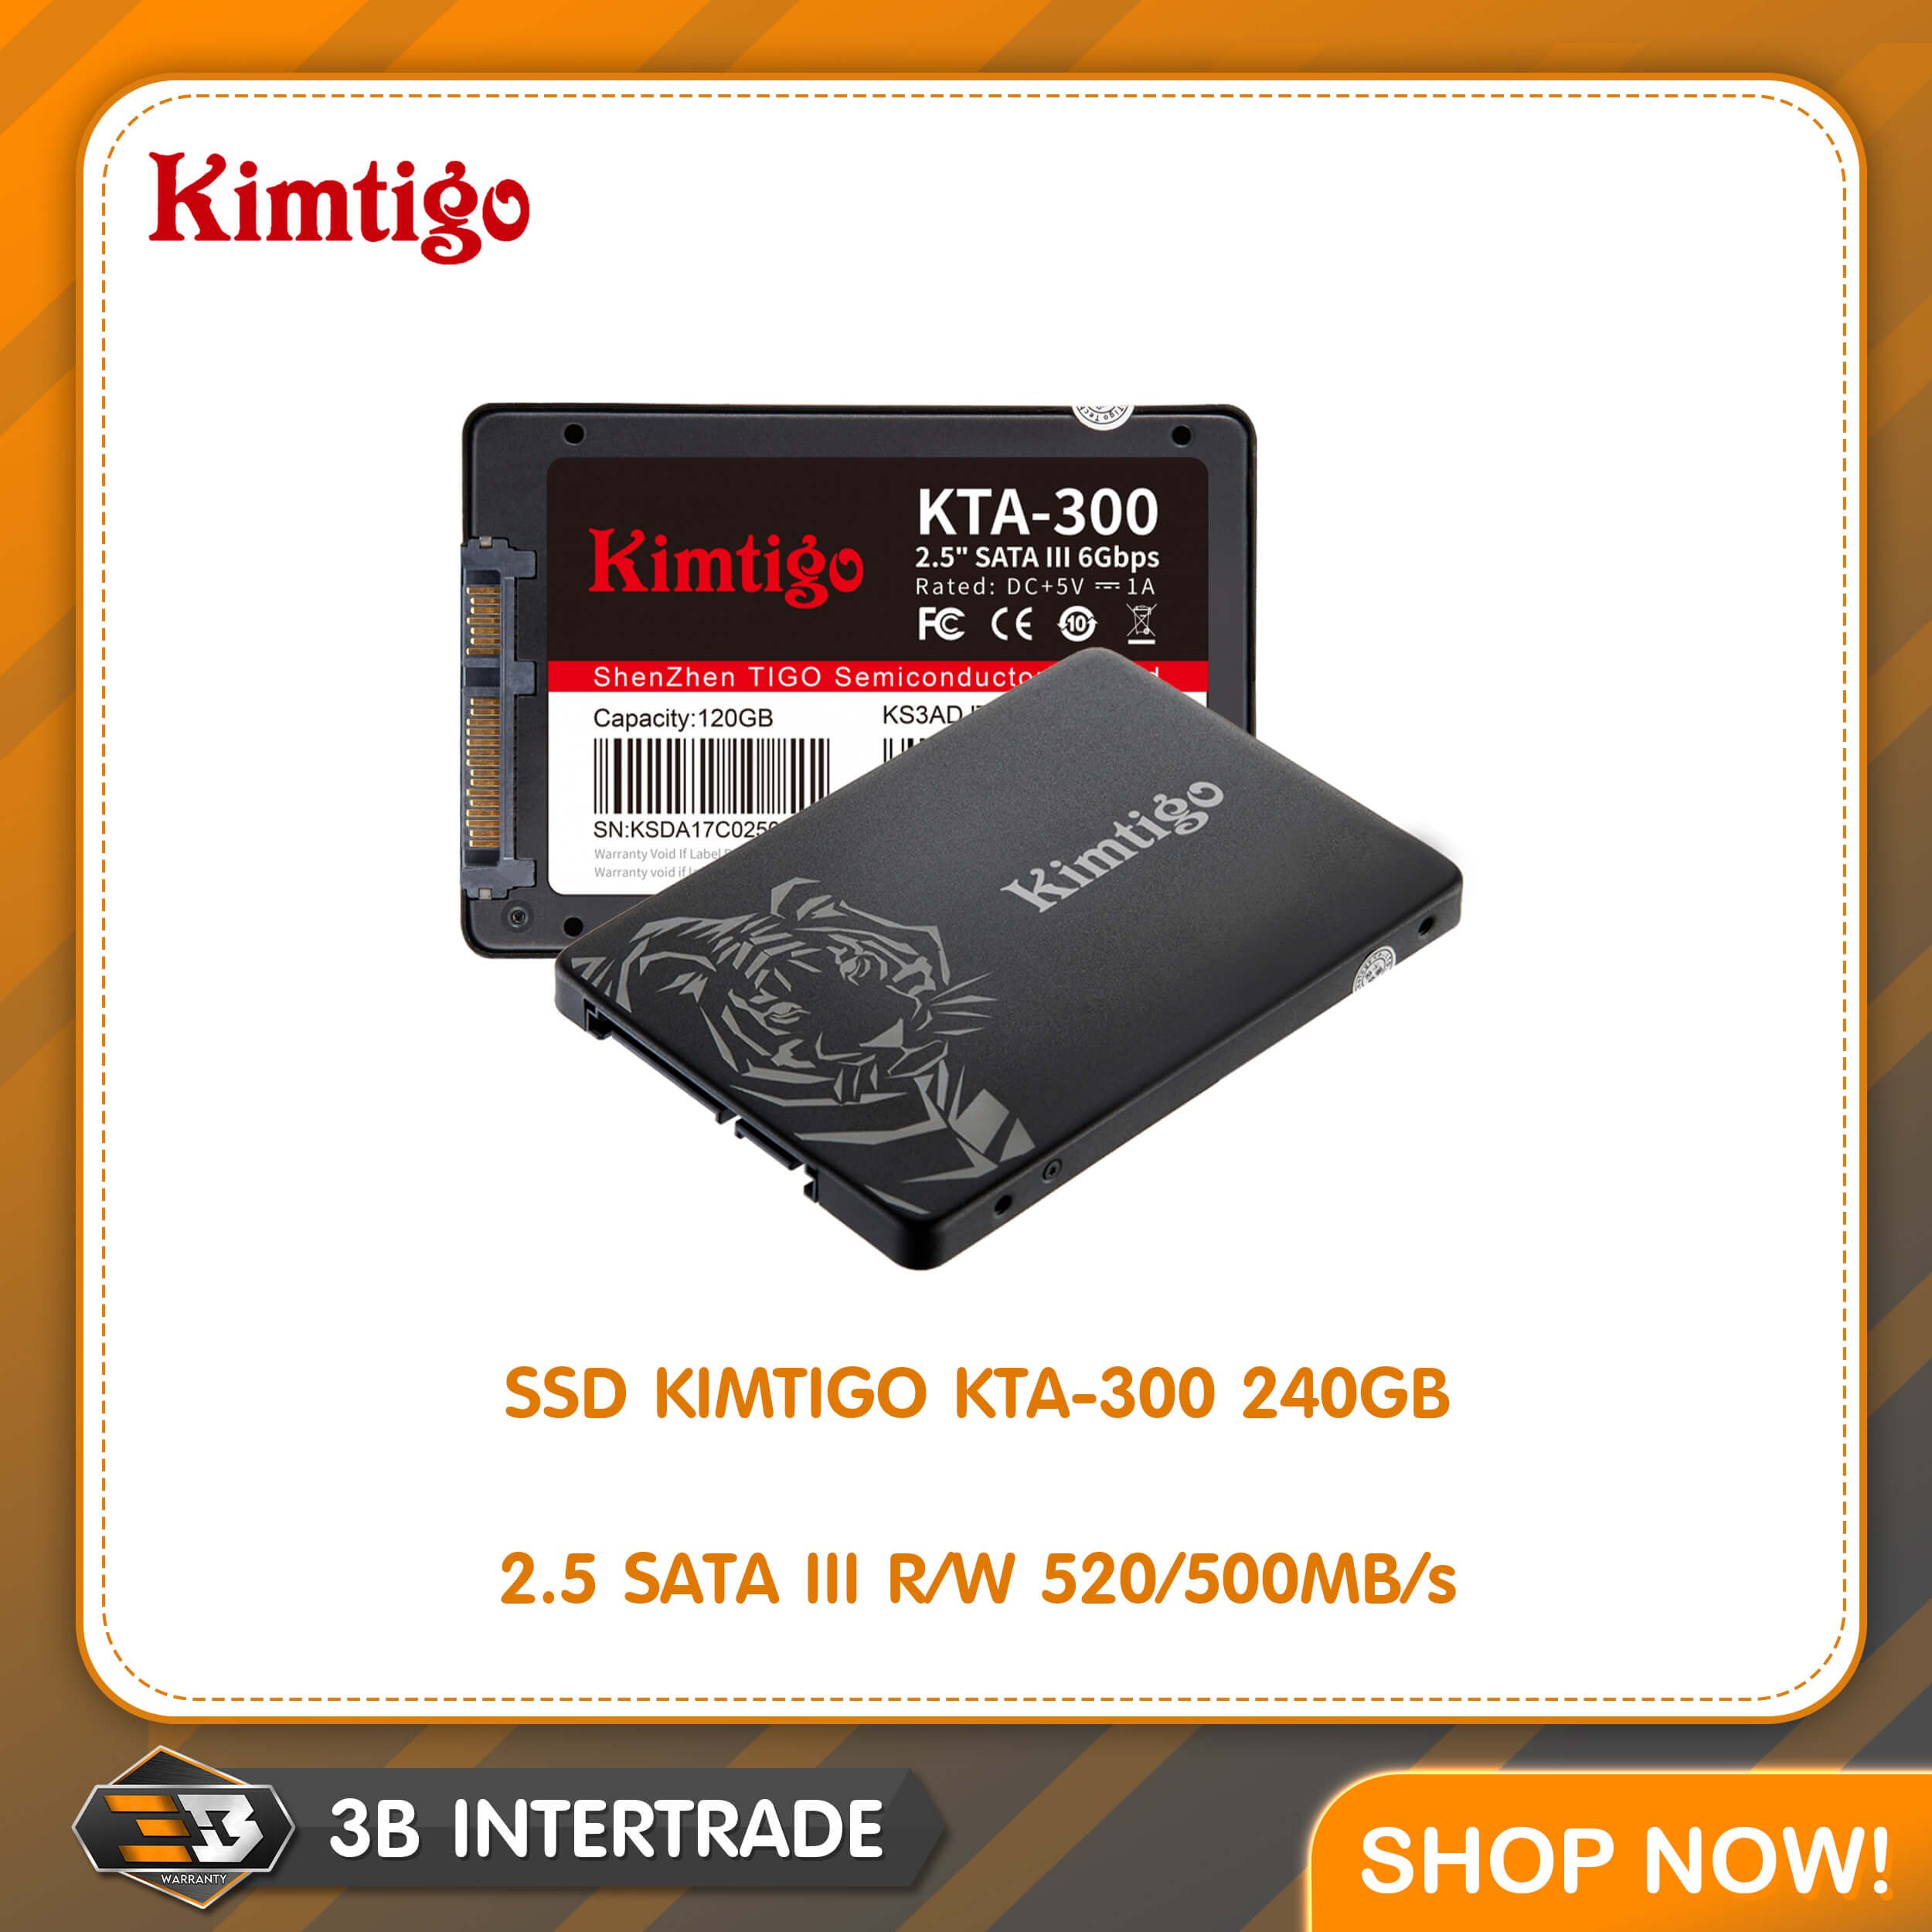 SSD KIMTIGO KTA-300 240GB